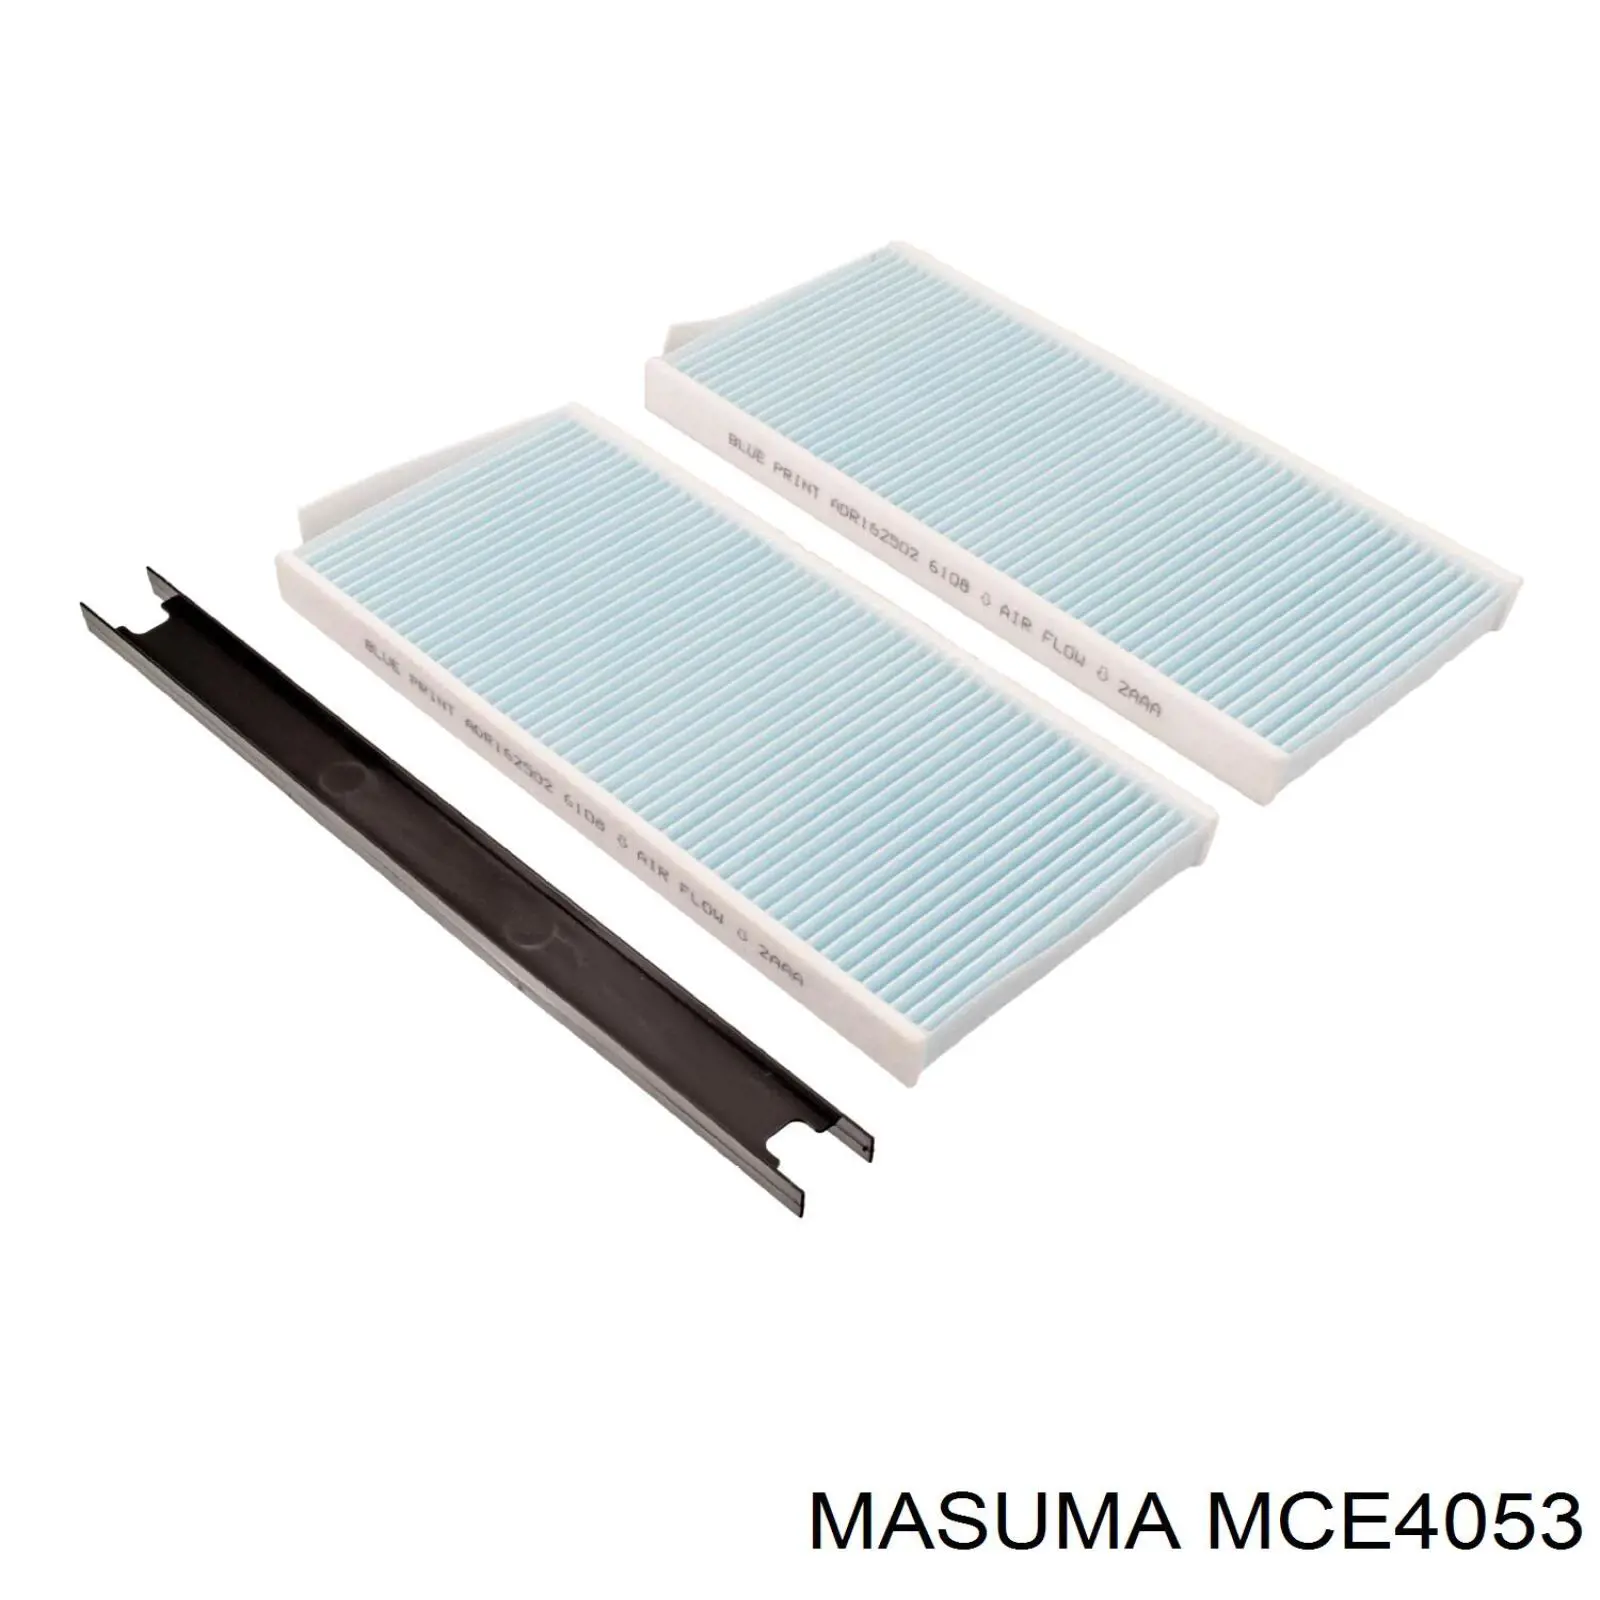 MCE4053 Masuma filtro habitáculo